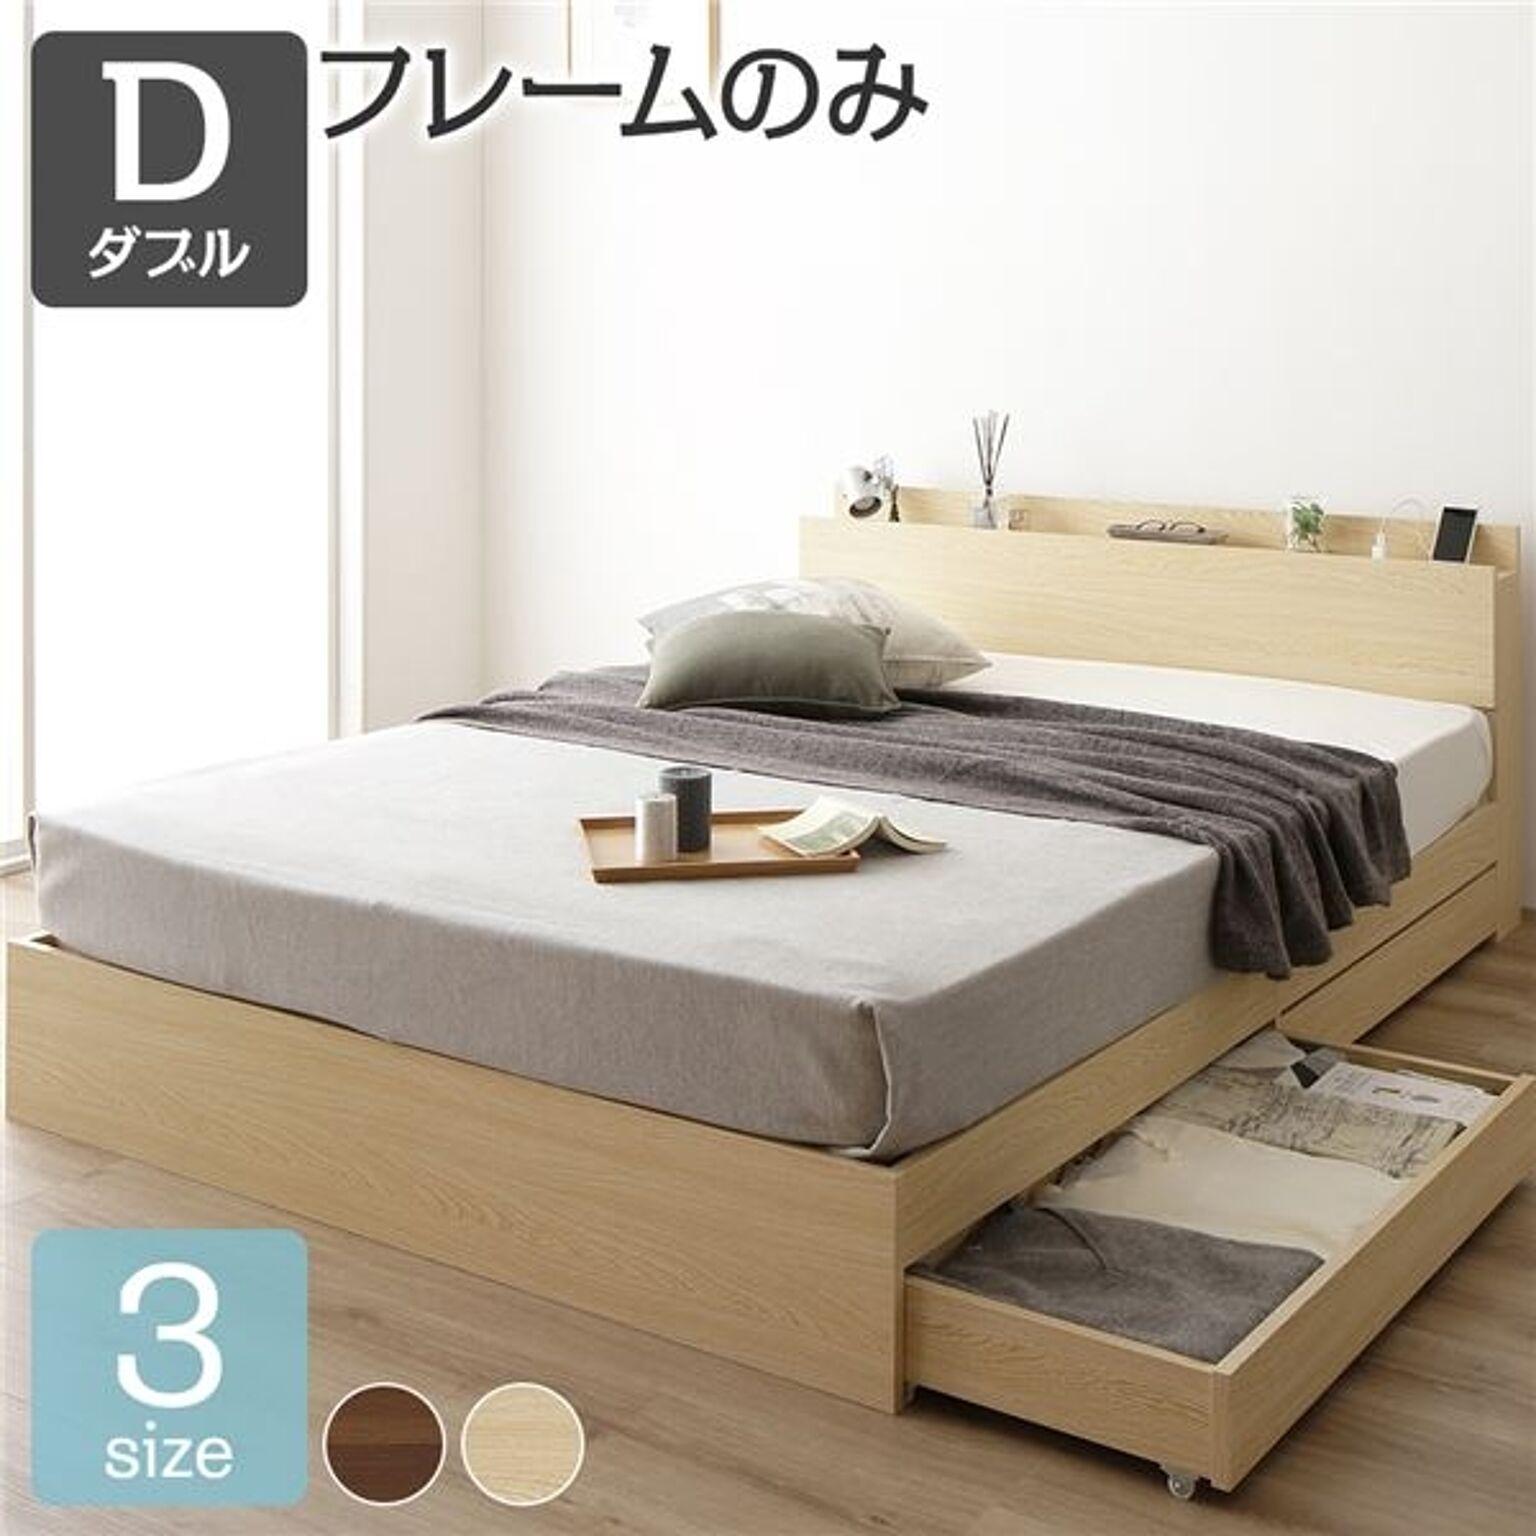 ベッド 収納付き ダブル ナチュラル ベッドフレーム ハイクオリティモダン 木製ベッド 引き出し付き 宮付き コンセント付き